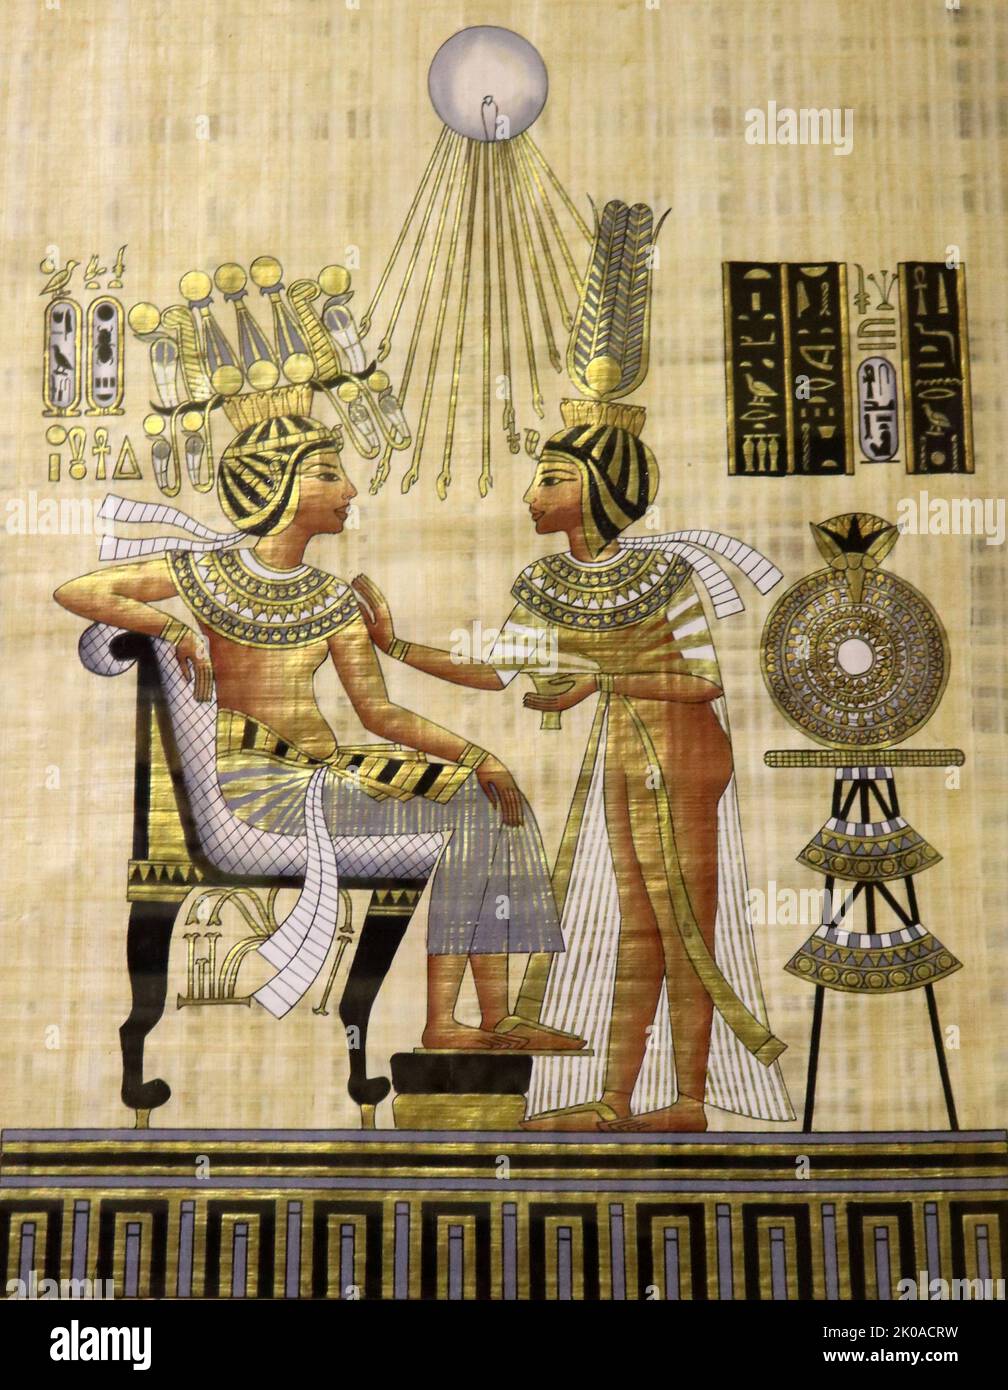 Papiro moderno raffigurante il re Tutankhamon, un antico faraone egiziano (regnò sul c.. 1332 - 1323 a.C.) con sua moglie Ankhesenamun. Nuovo Regno di storia egiziana Foto Stock